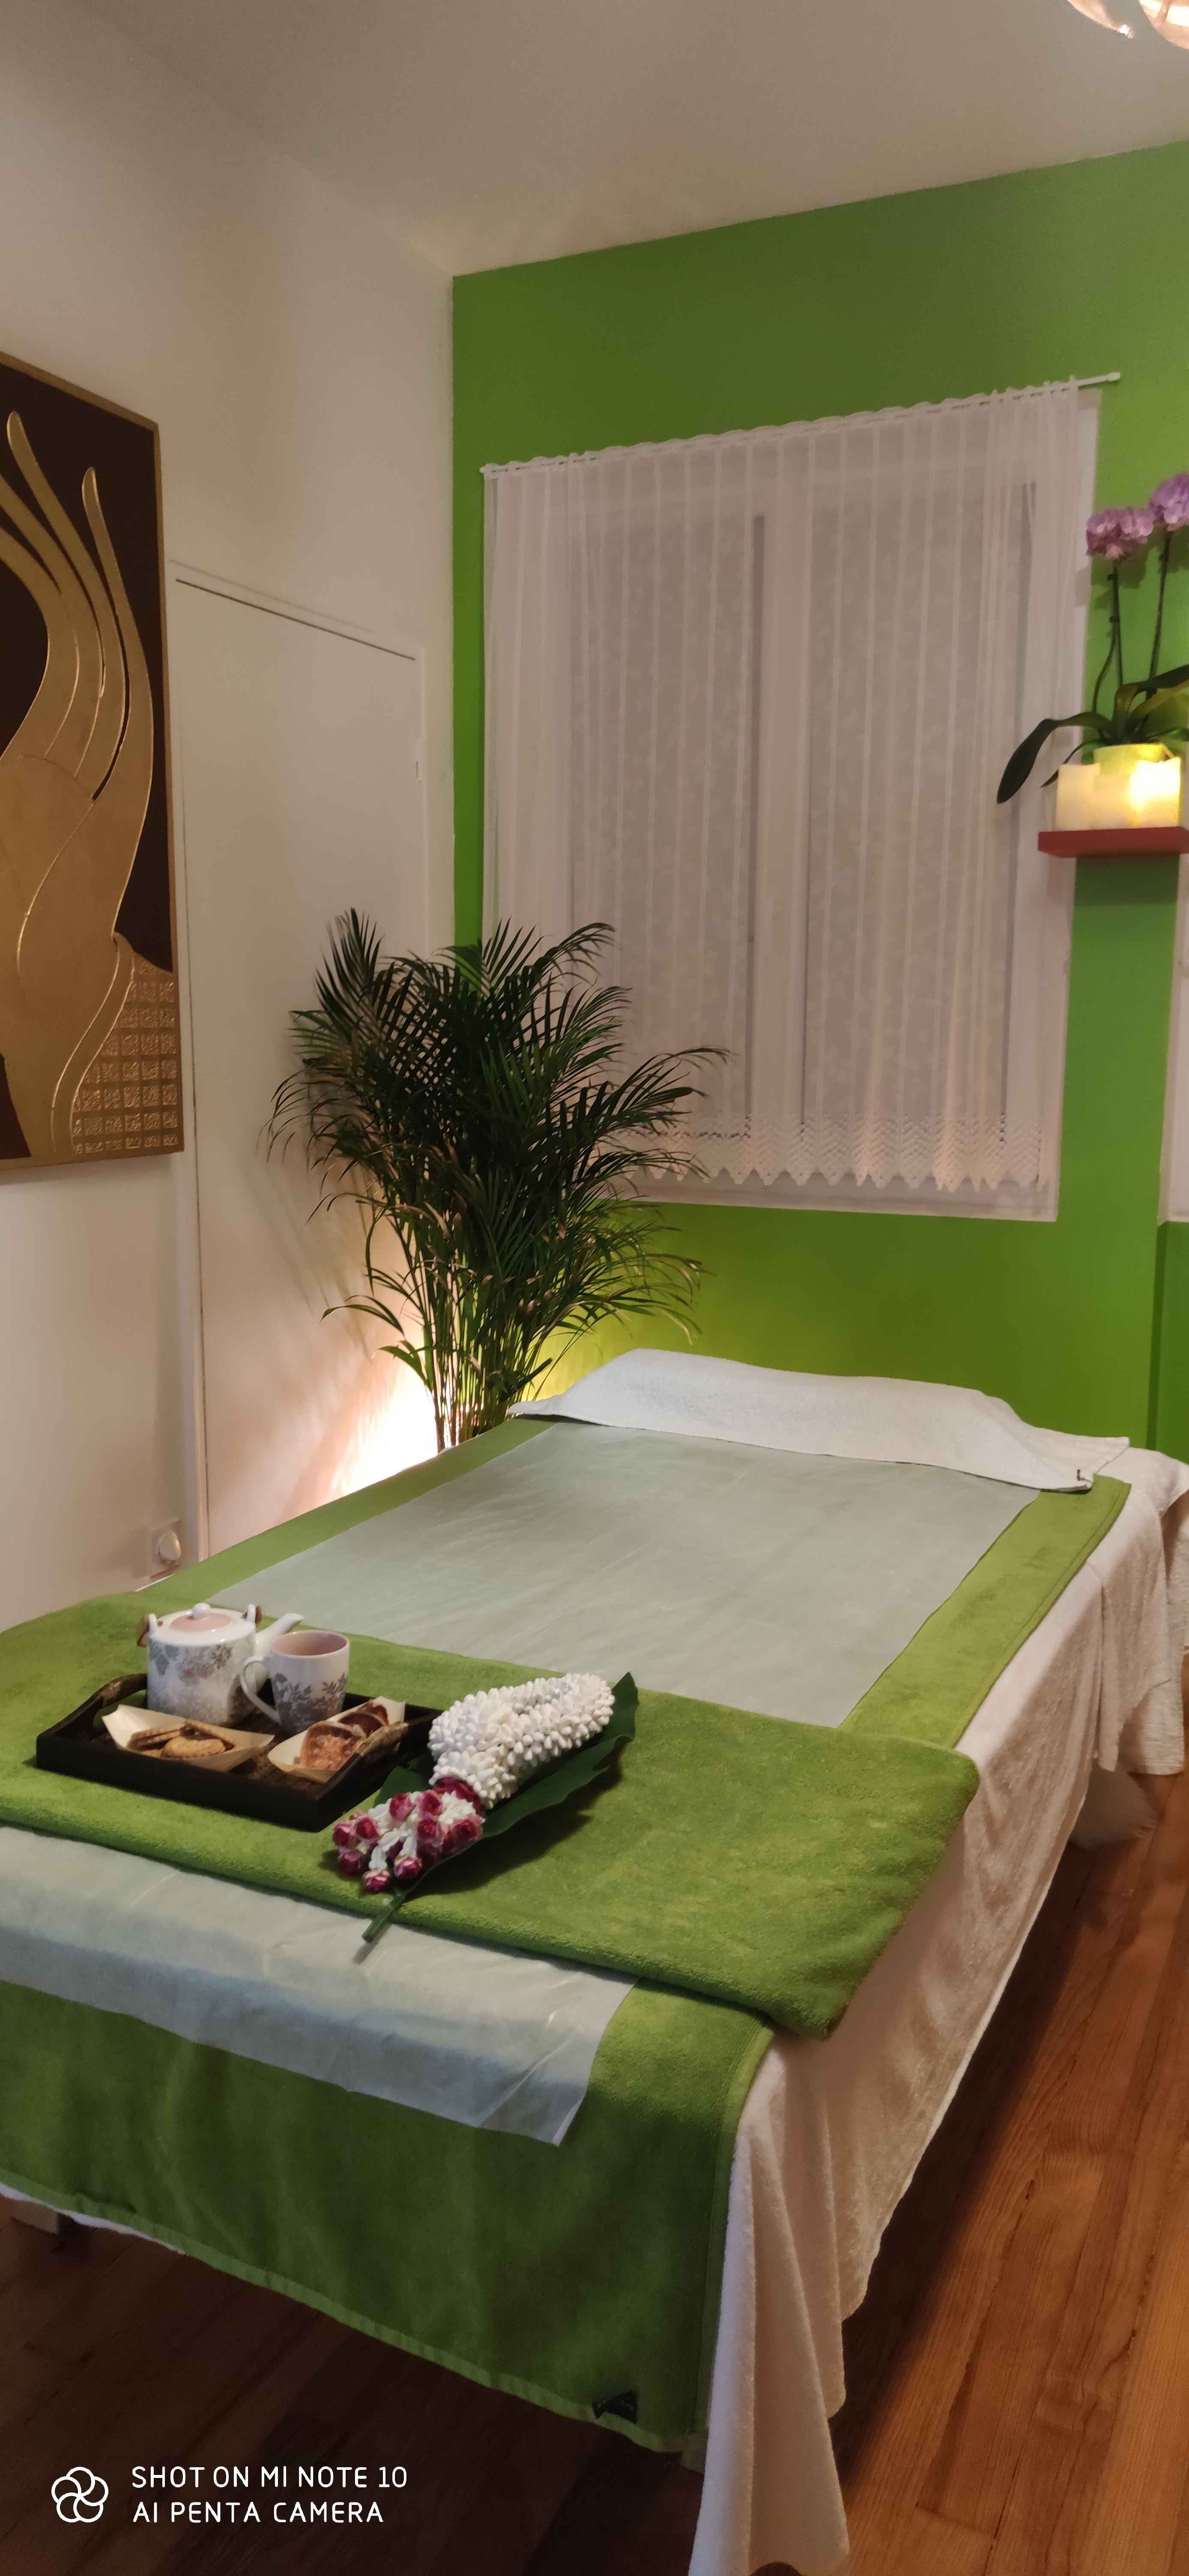 Salon Pho Thai Massage Caudebec en Caux rives en seine